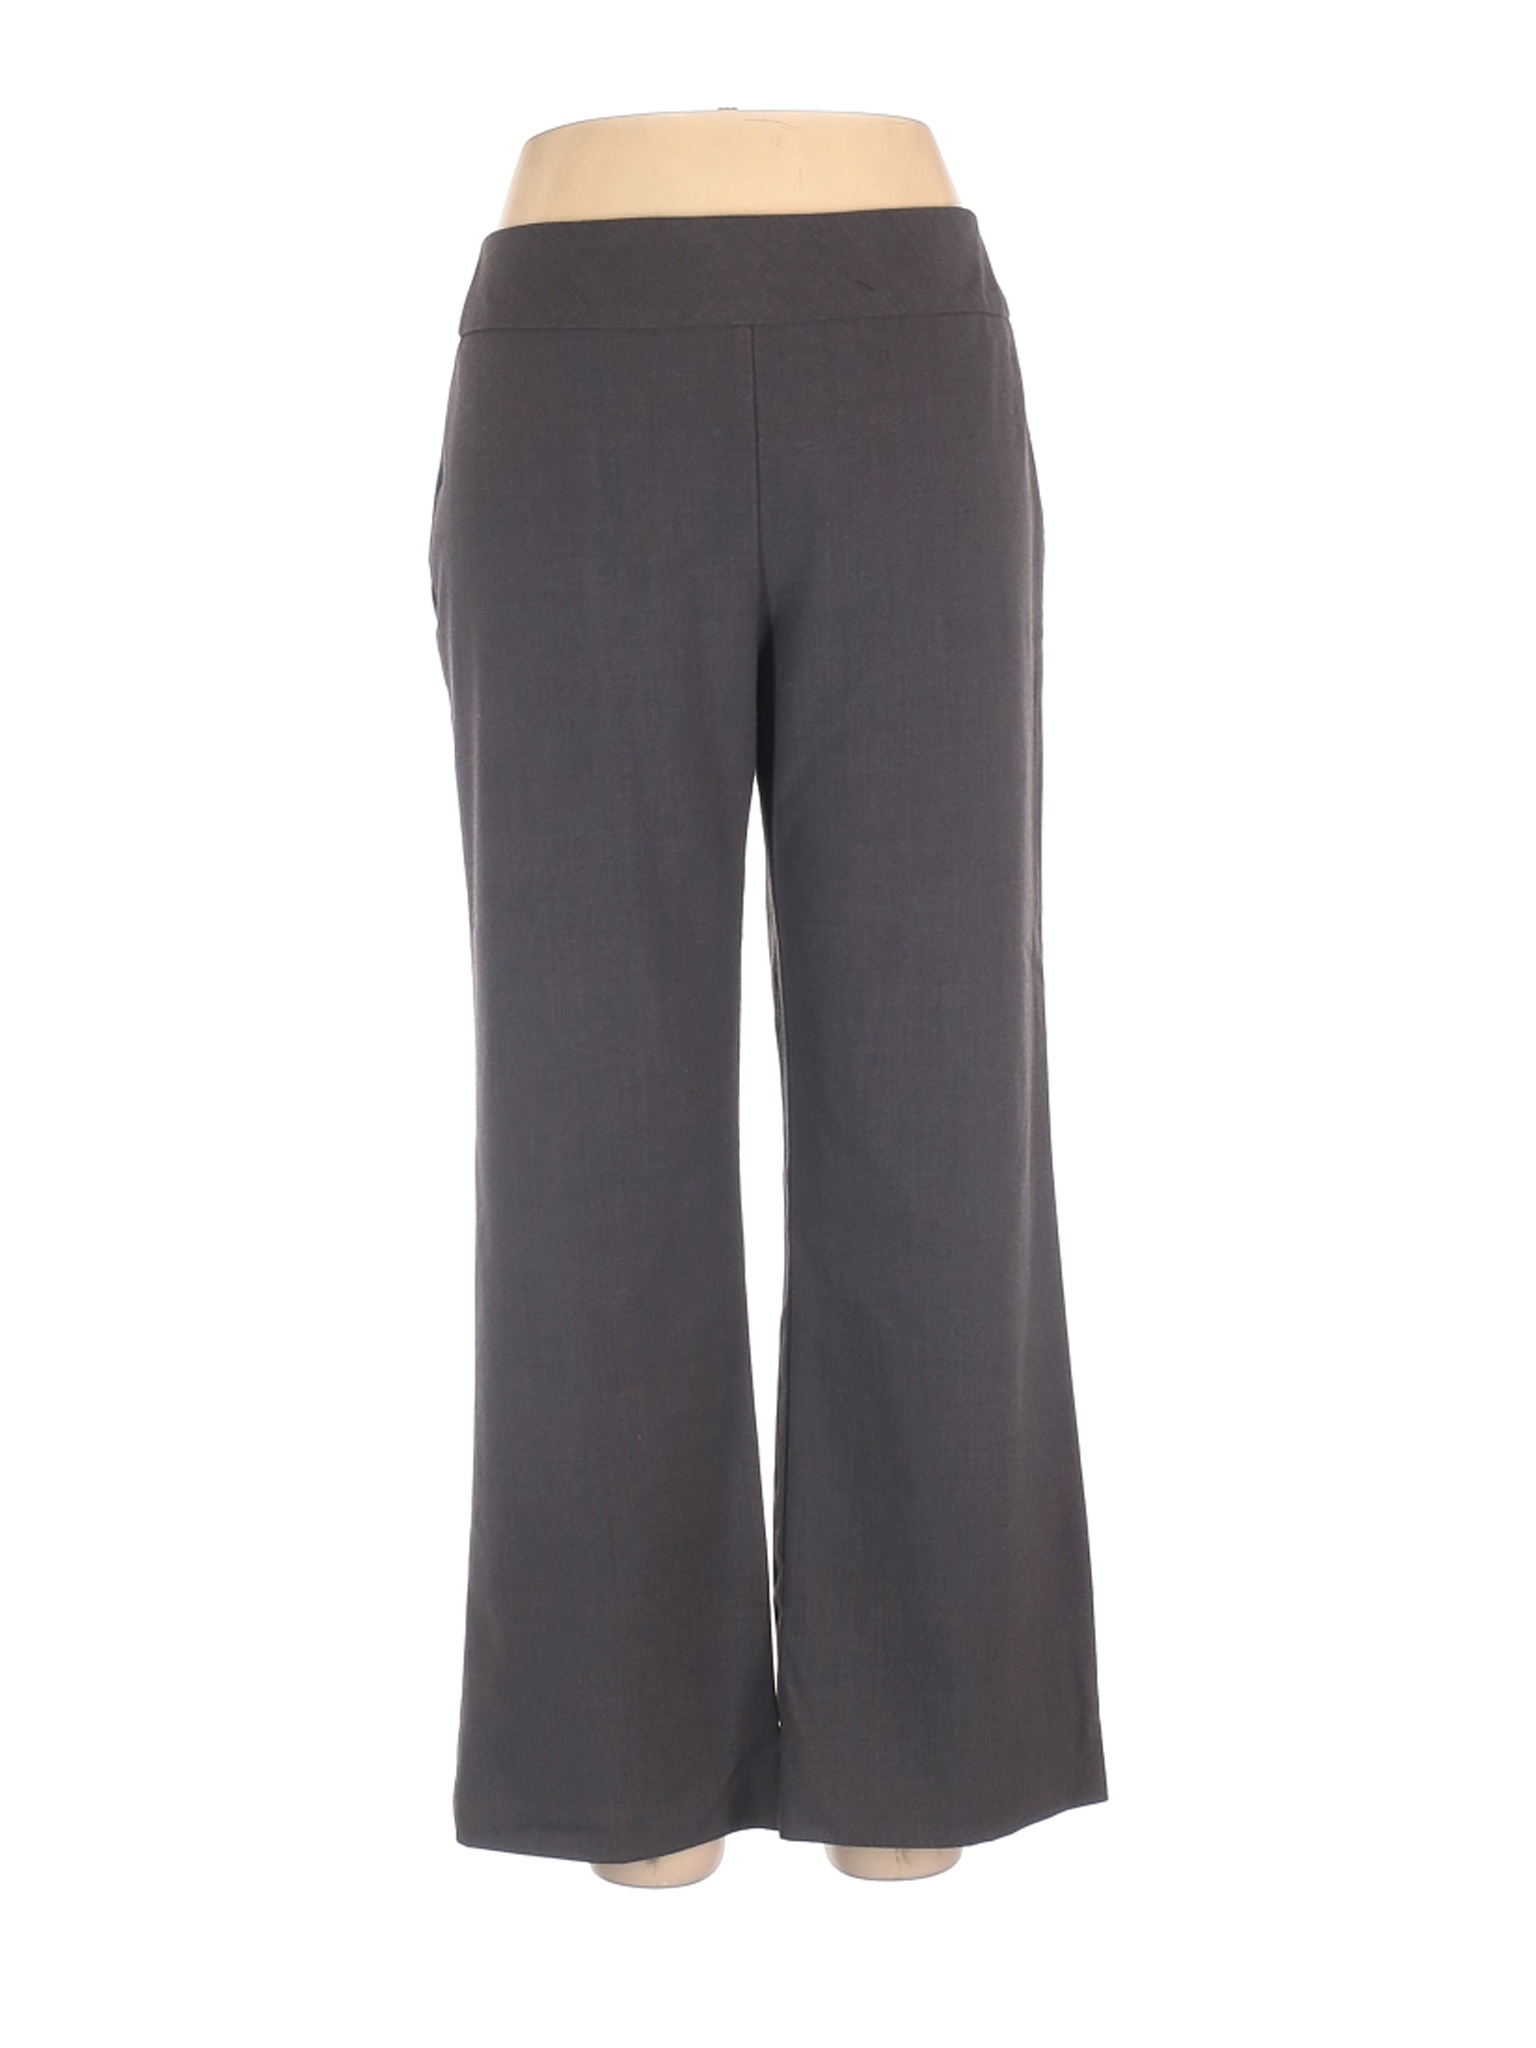 Roz & Ali Women Gray Dress Pants 14 Petites | eBay